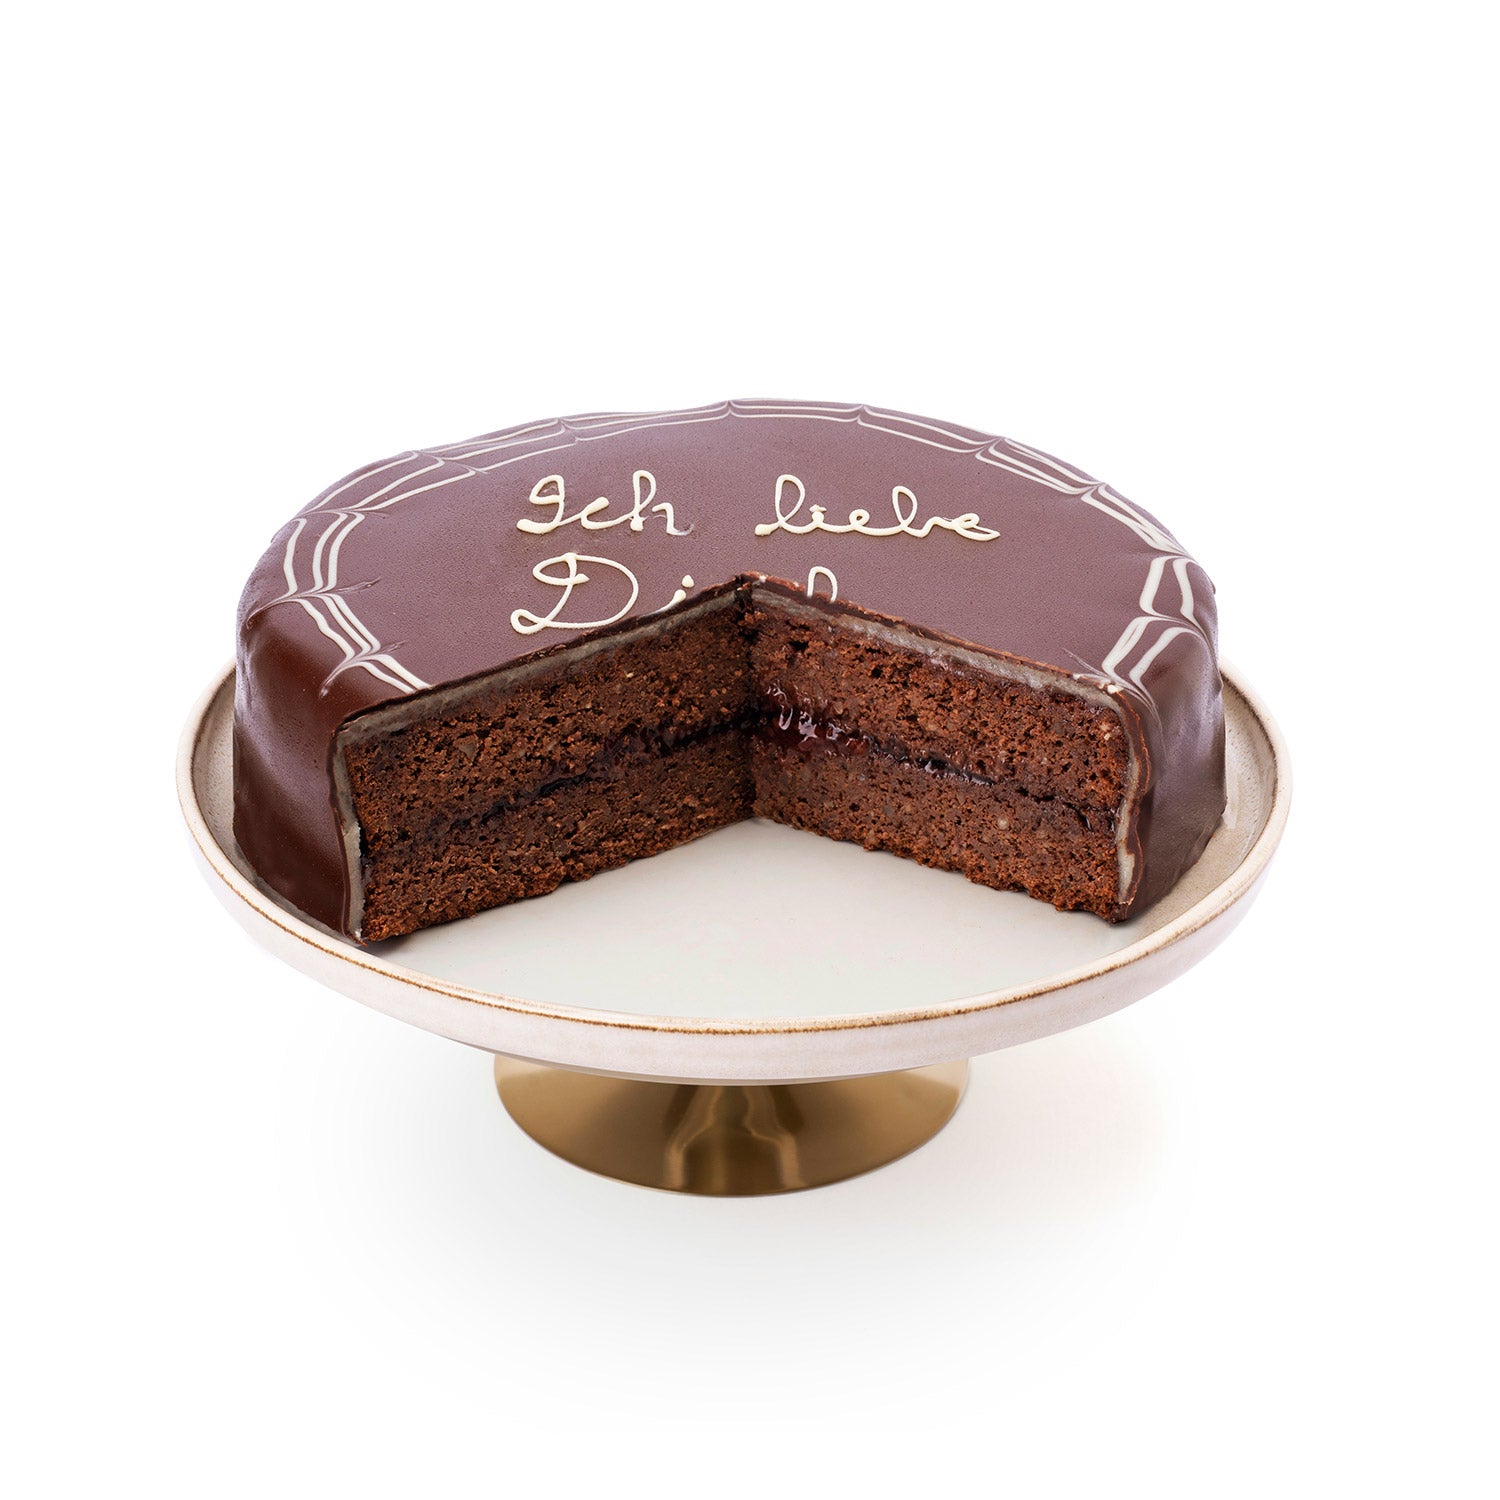 haustorte austrian chocolate cake